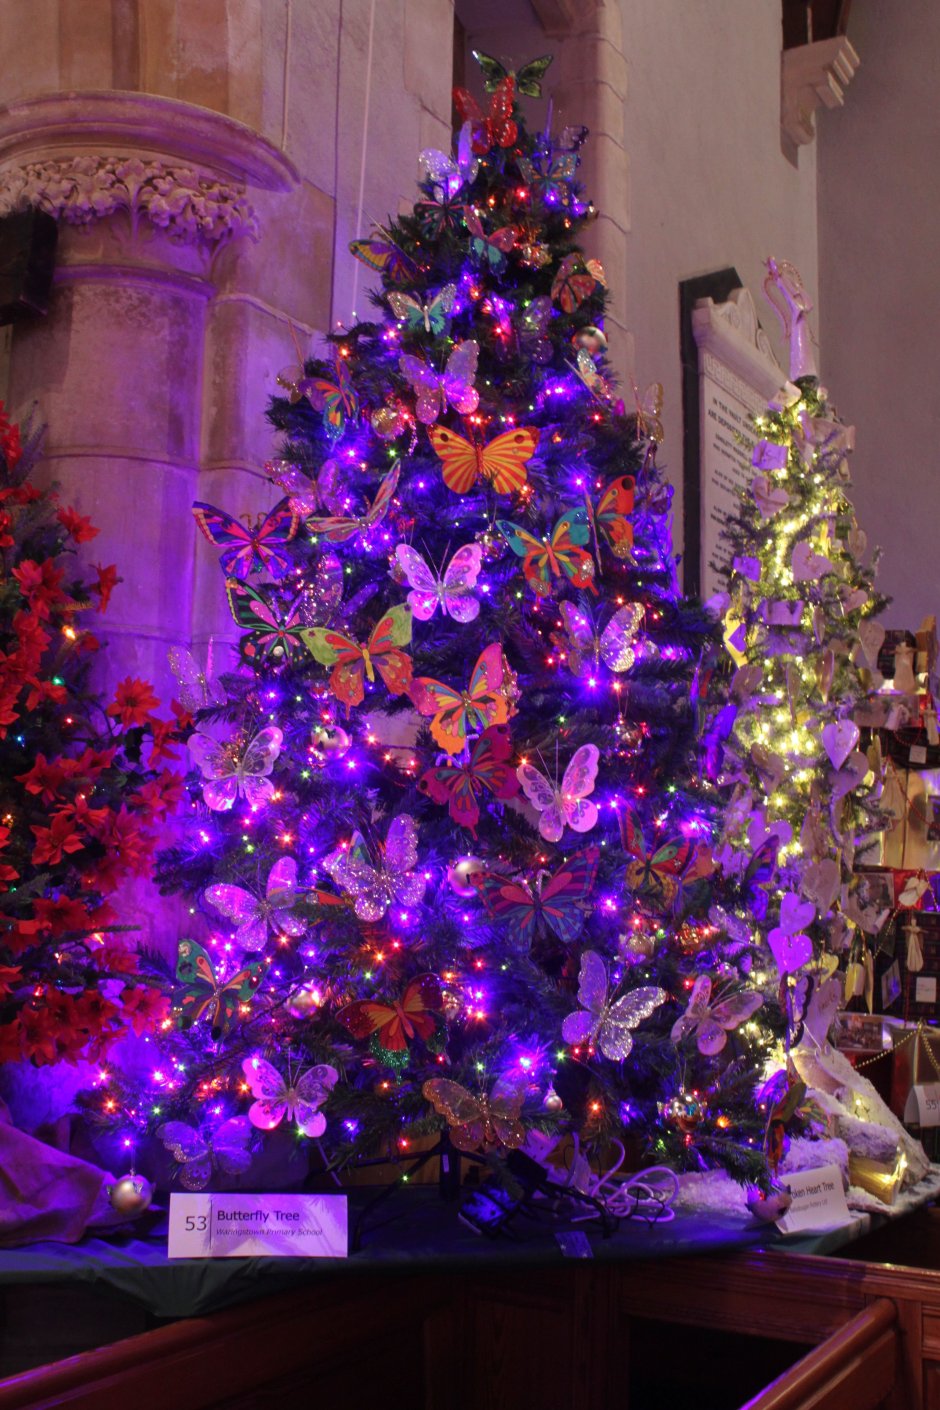 Новогодняя елка в фиолетовых тонах